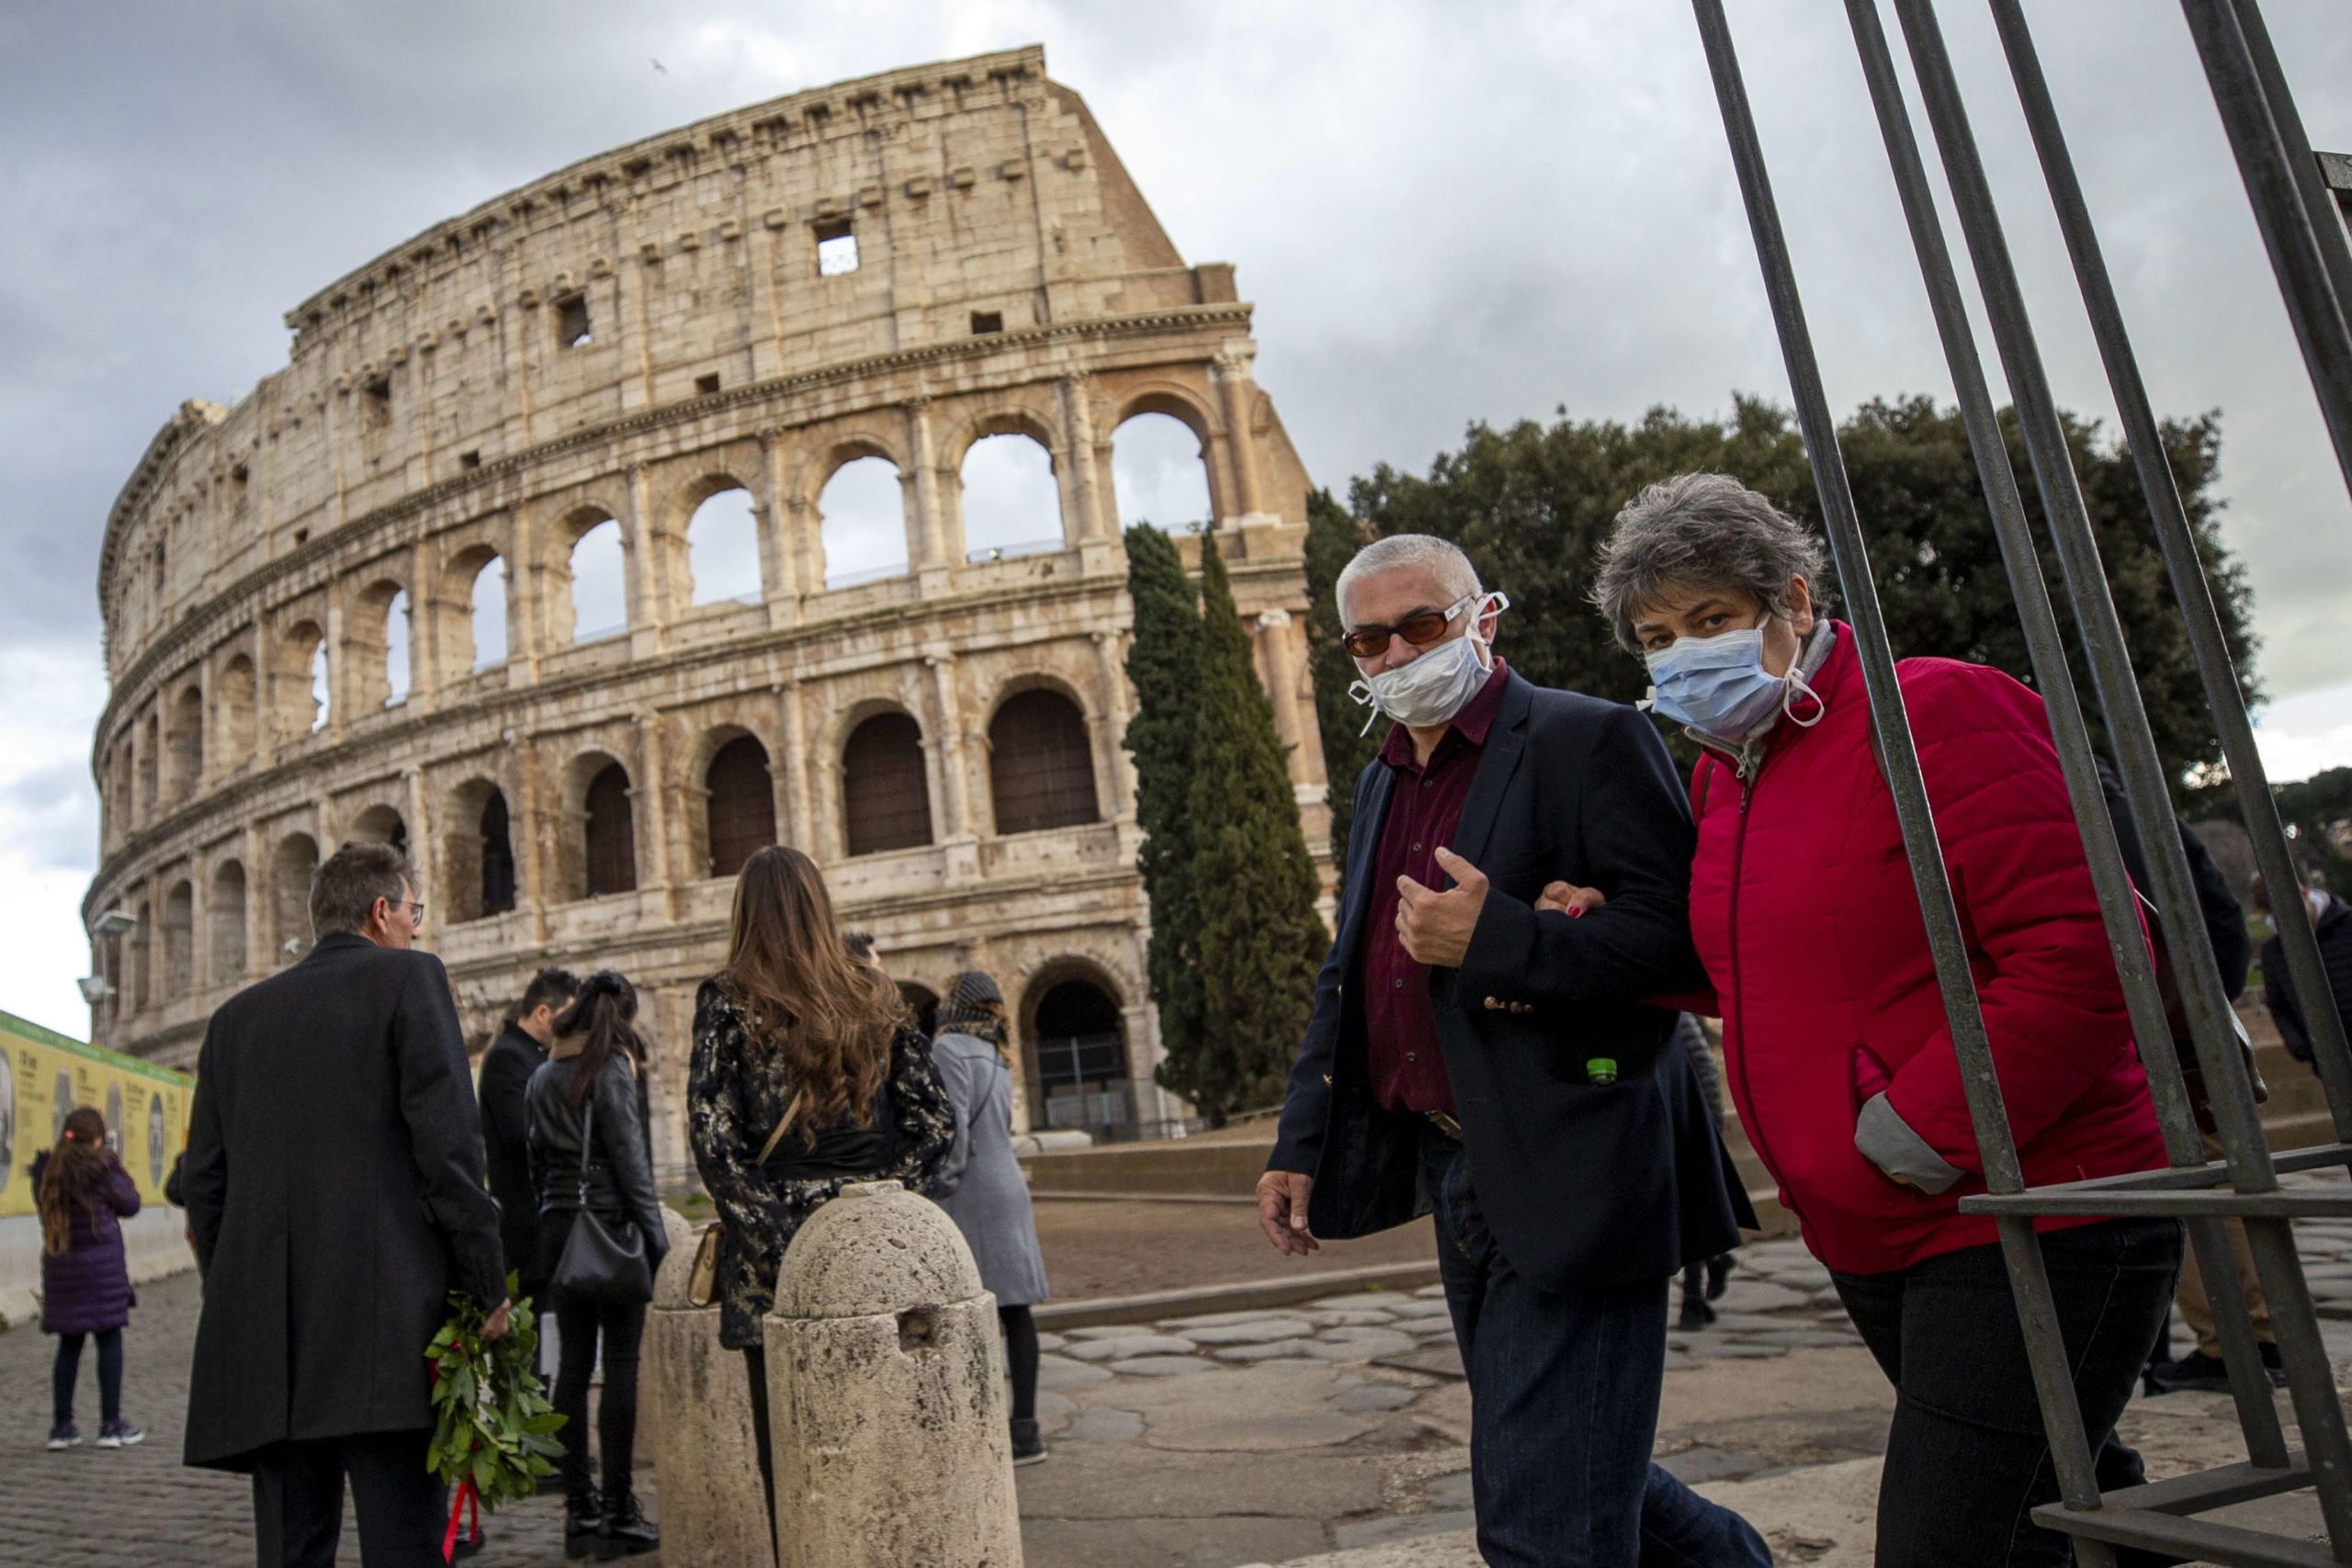 Ook rond het Colosseum in Rome is men liever voorzichtig